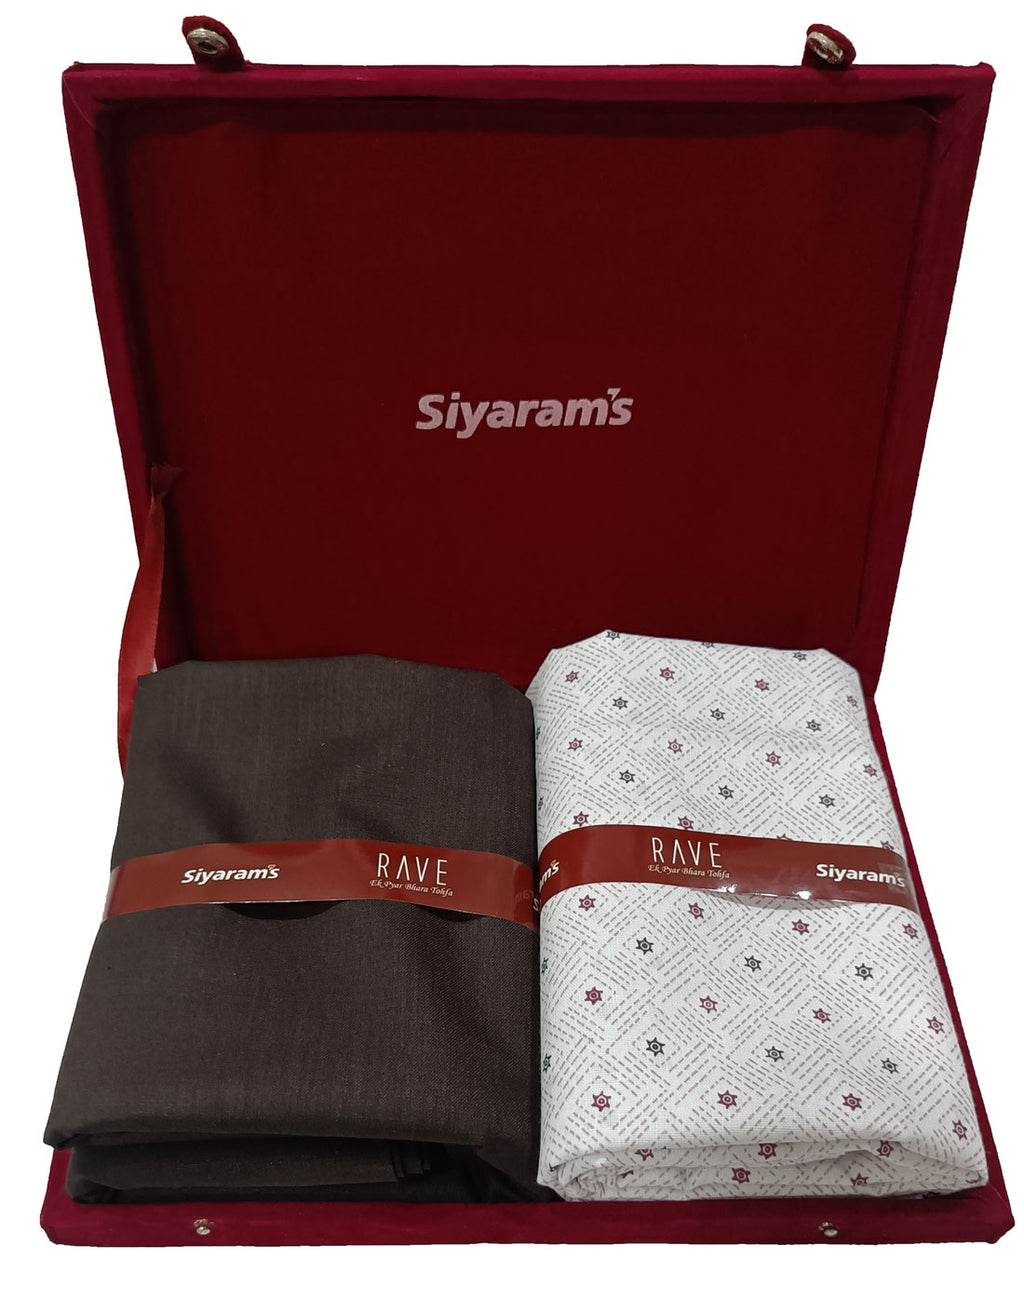 Top Siyaram's Fabric Wholesalers in Goa - फैब्रिक व्होलेसलेर्स-सियाराम'स,  गोवा - Best Siyaram's Fabric Wholesalers - Justdial